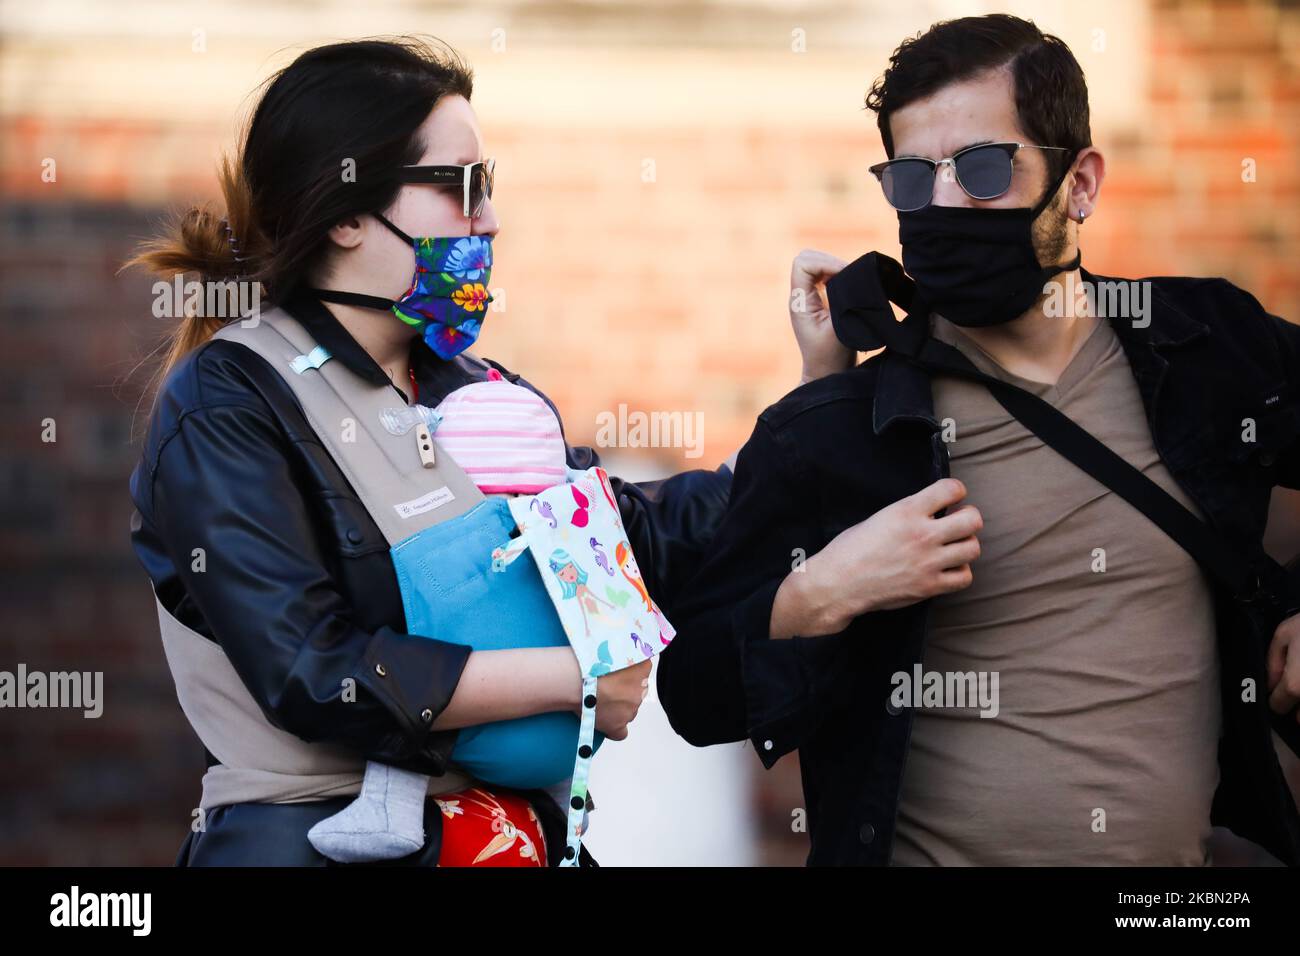 Una coppia indossa una maschera protettiva a causa della